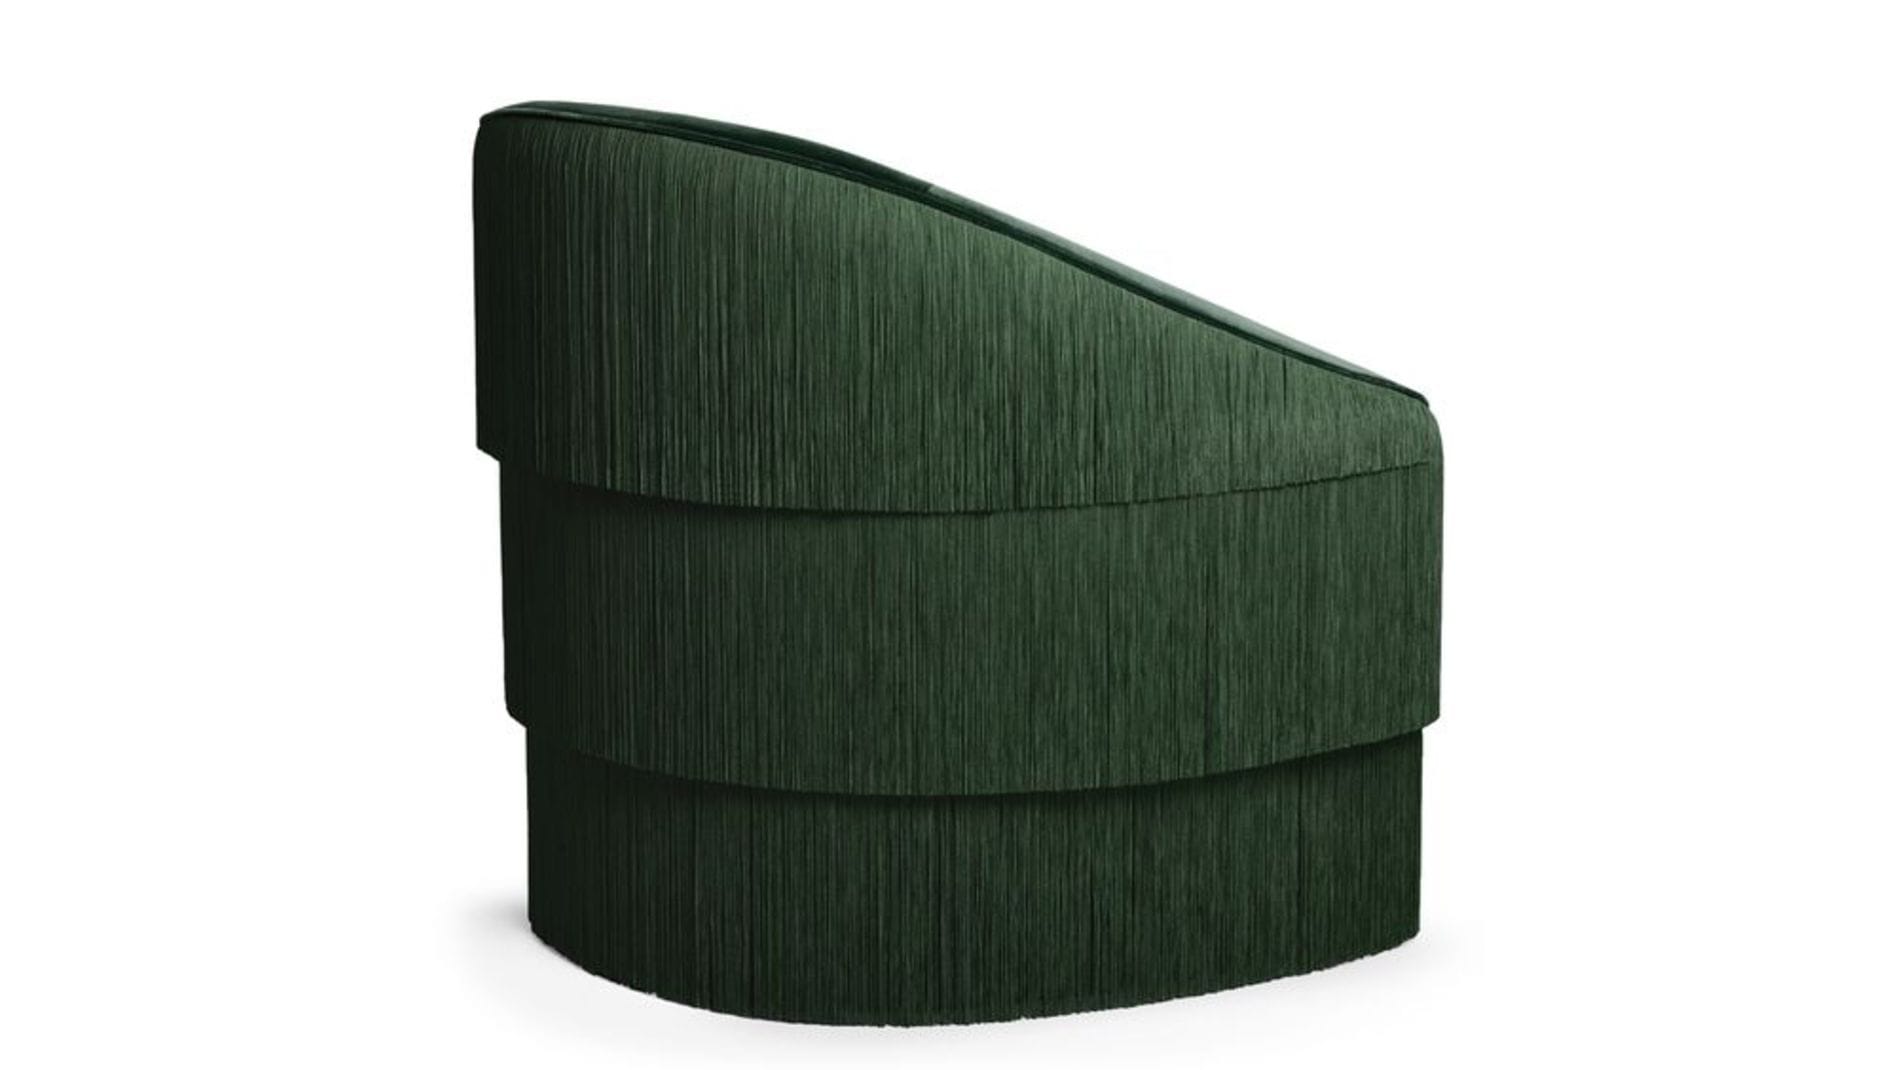 Кресло Munna Зеленое